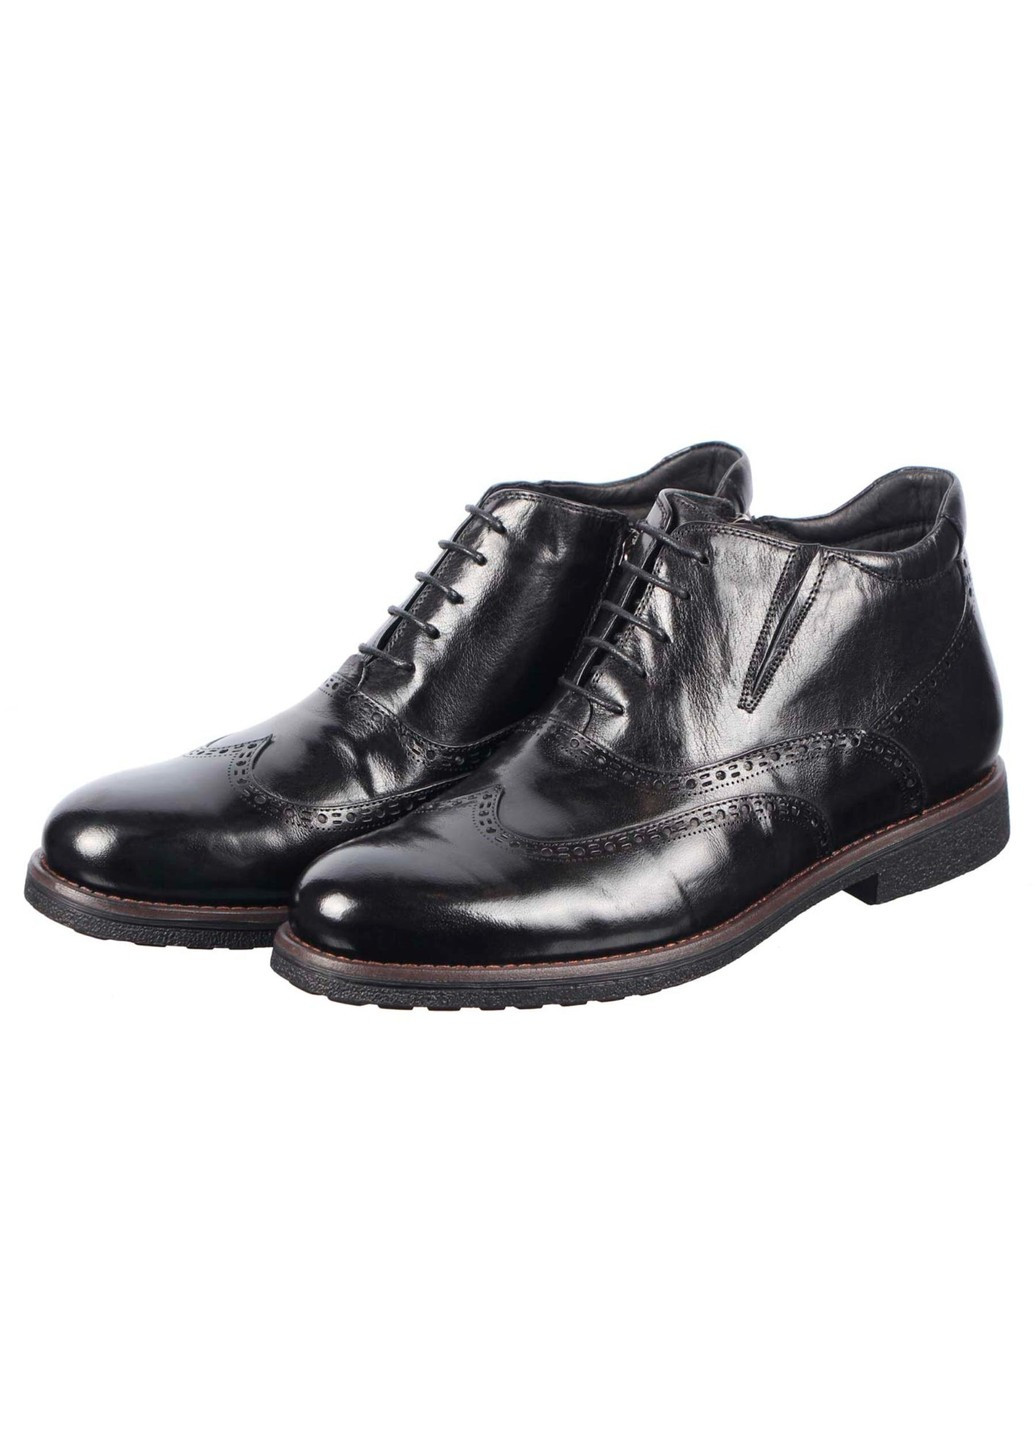 Черные зимние мужские зимние ботинки классические 195355 Bazallini